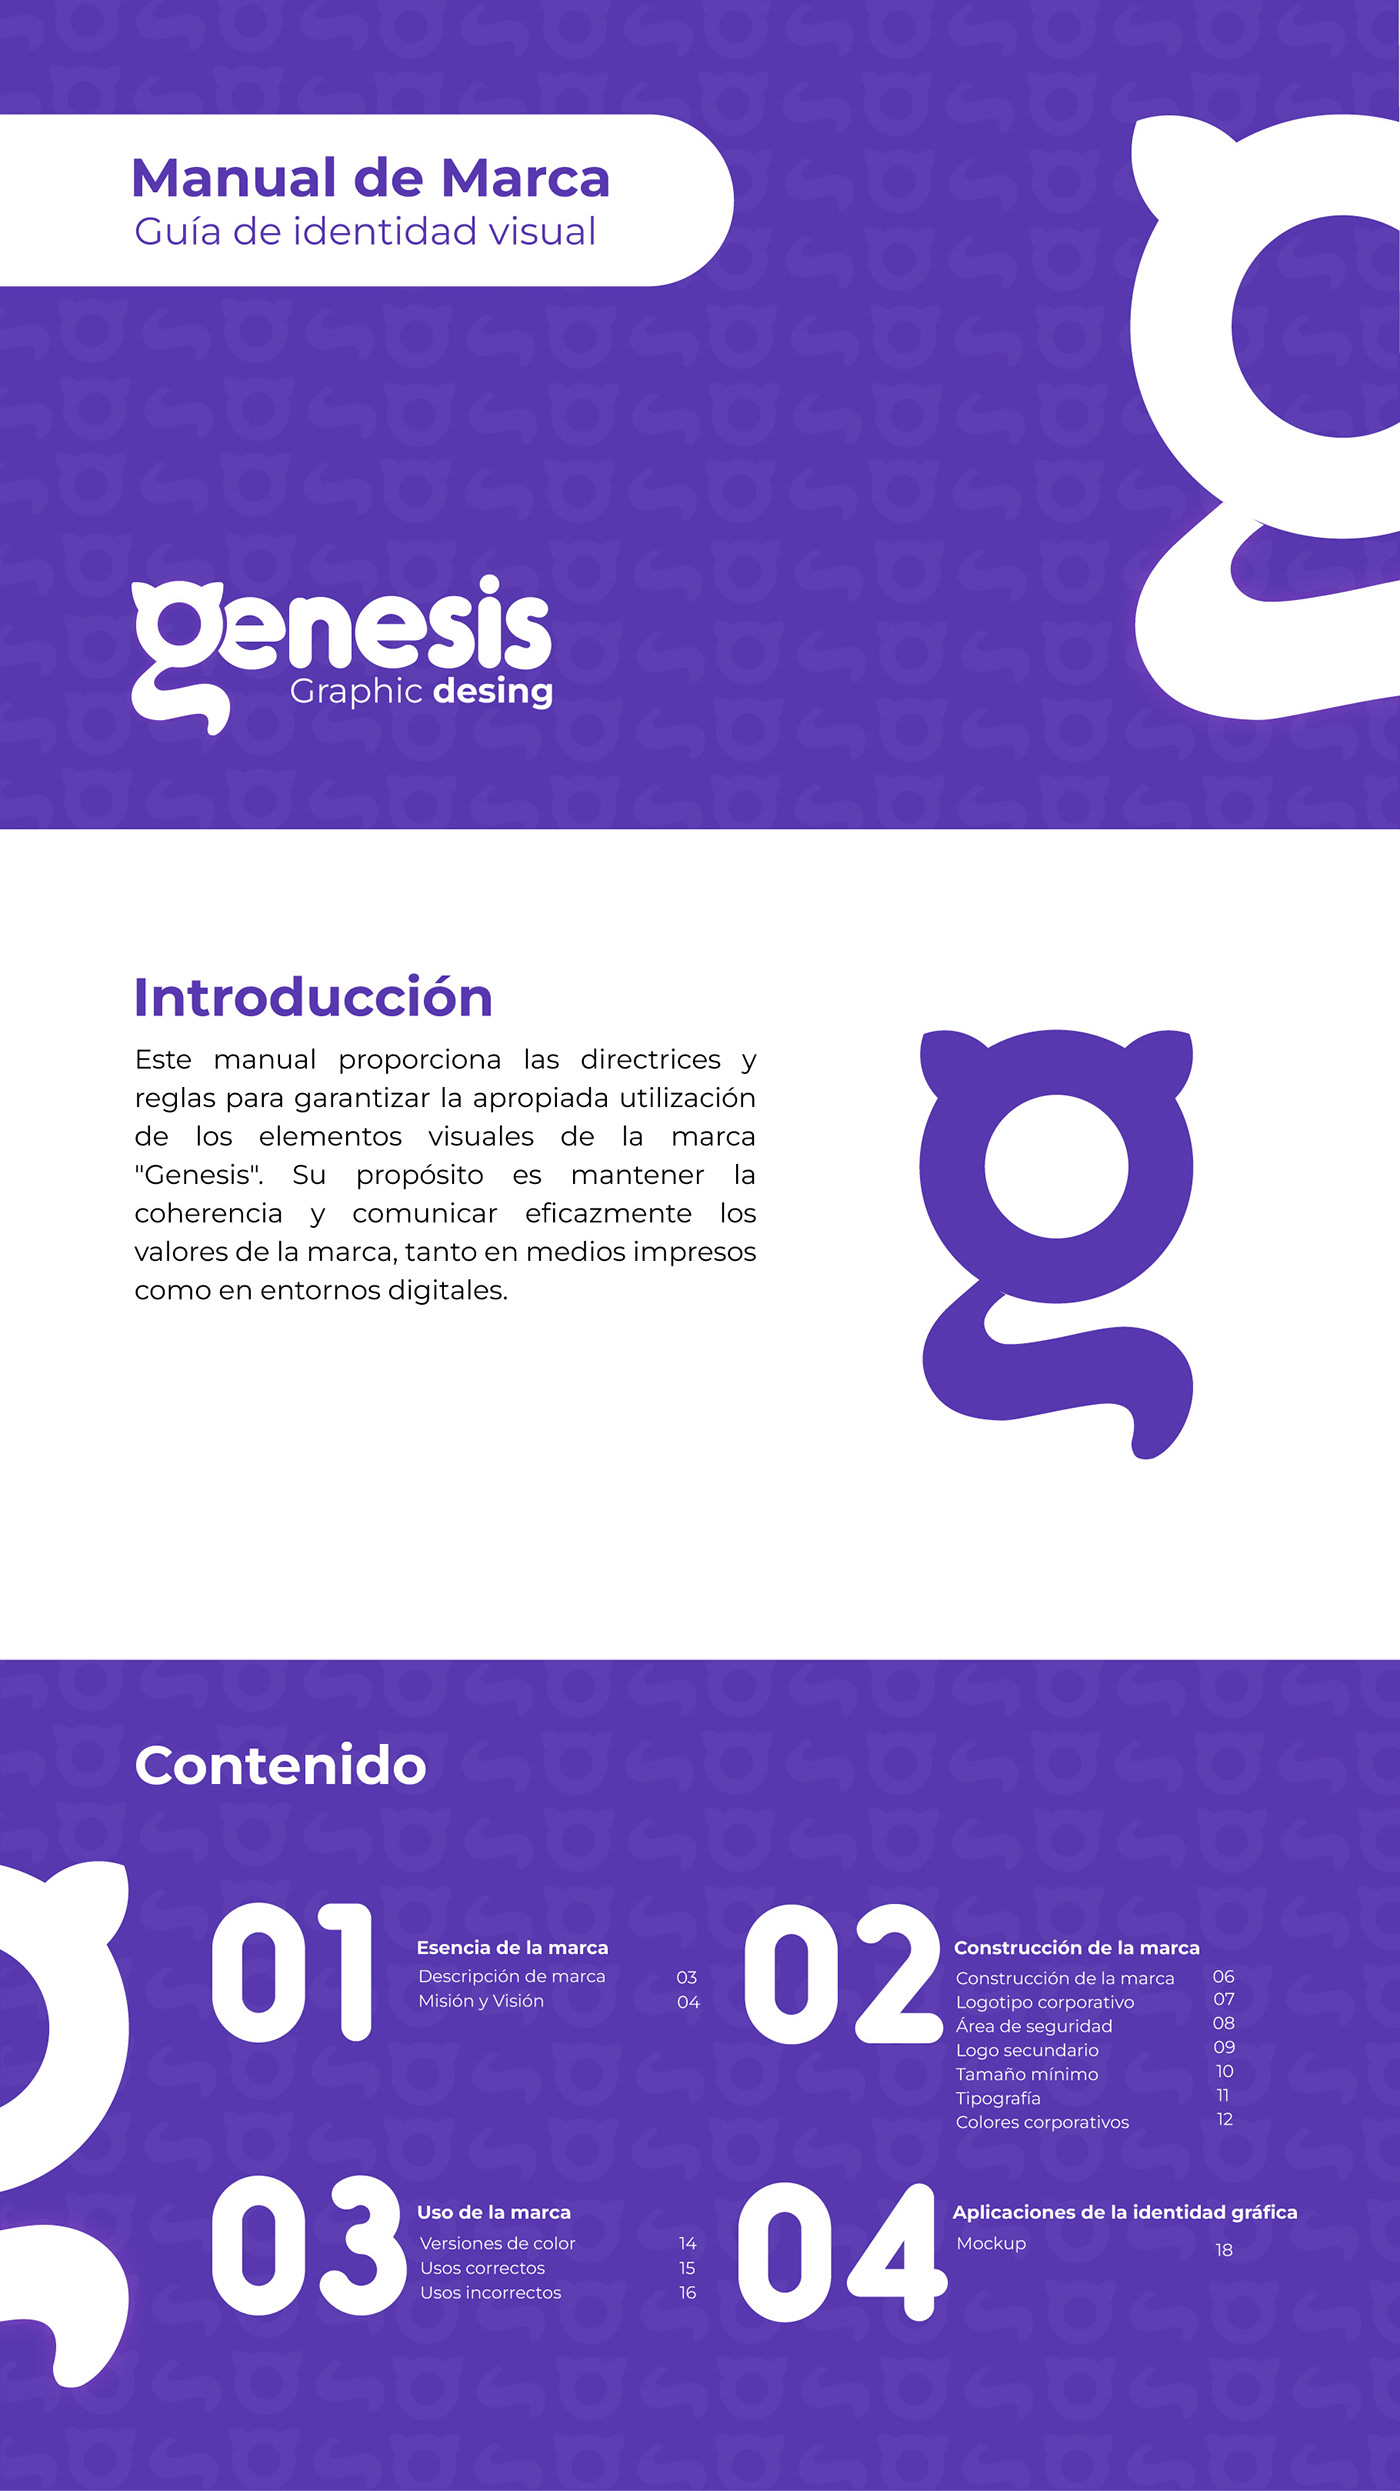 Manual de Marca identidad visual Logotipo visual identity